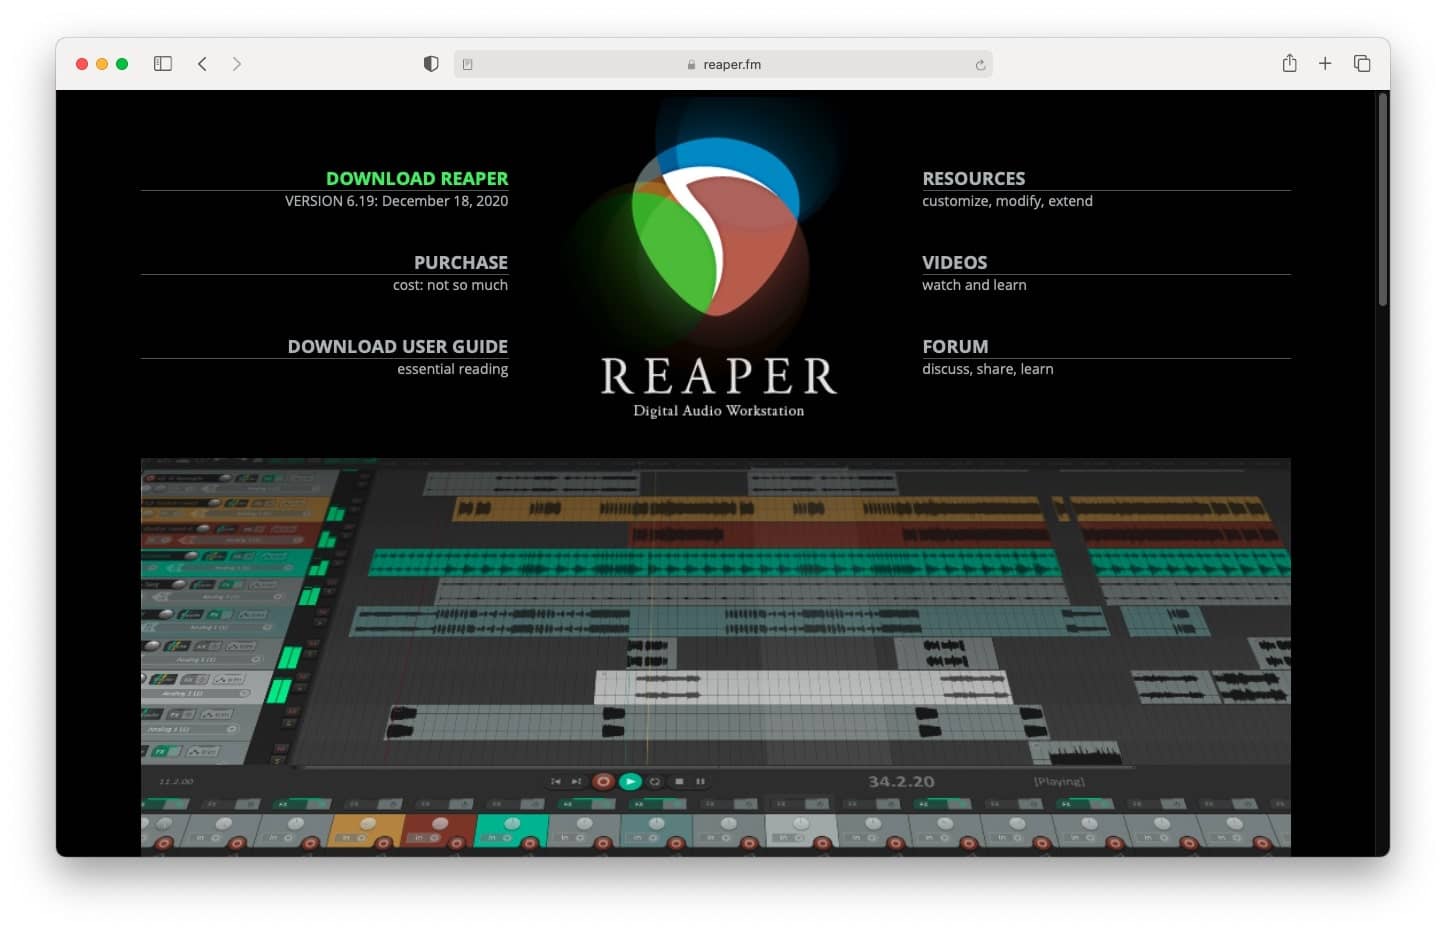 Reaper editing software